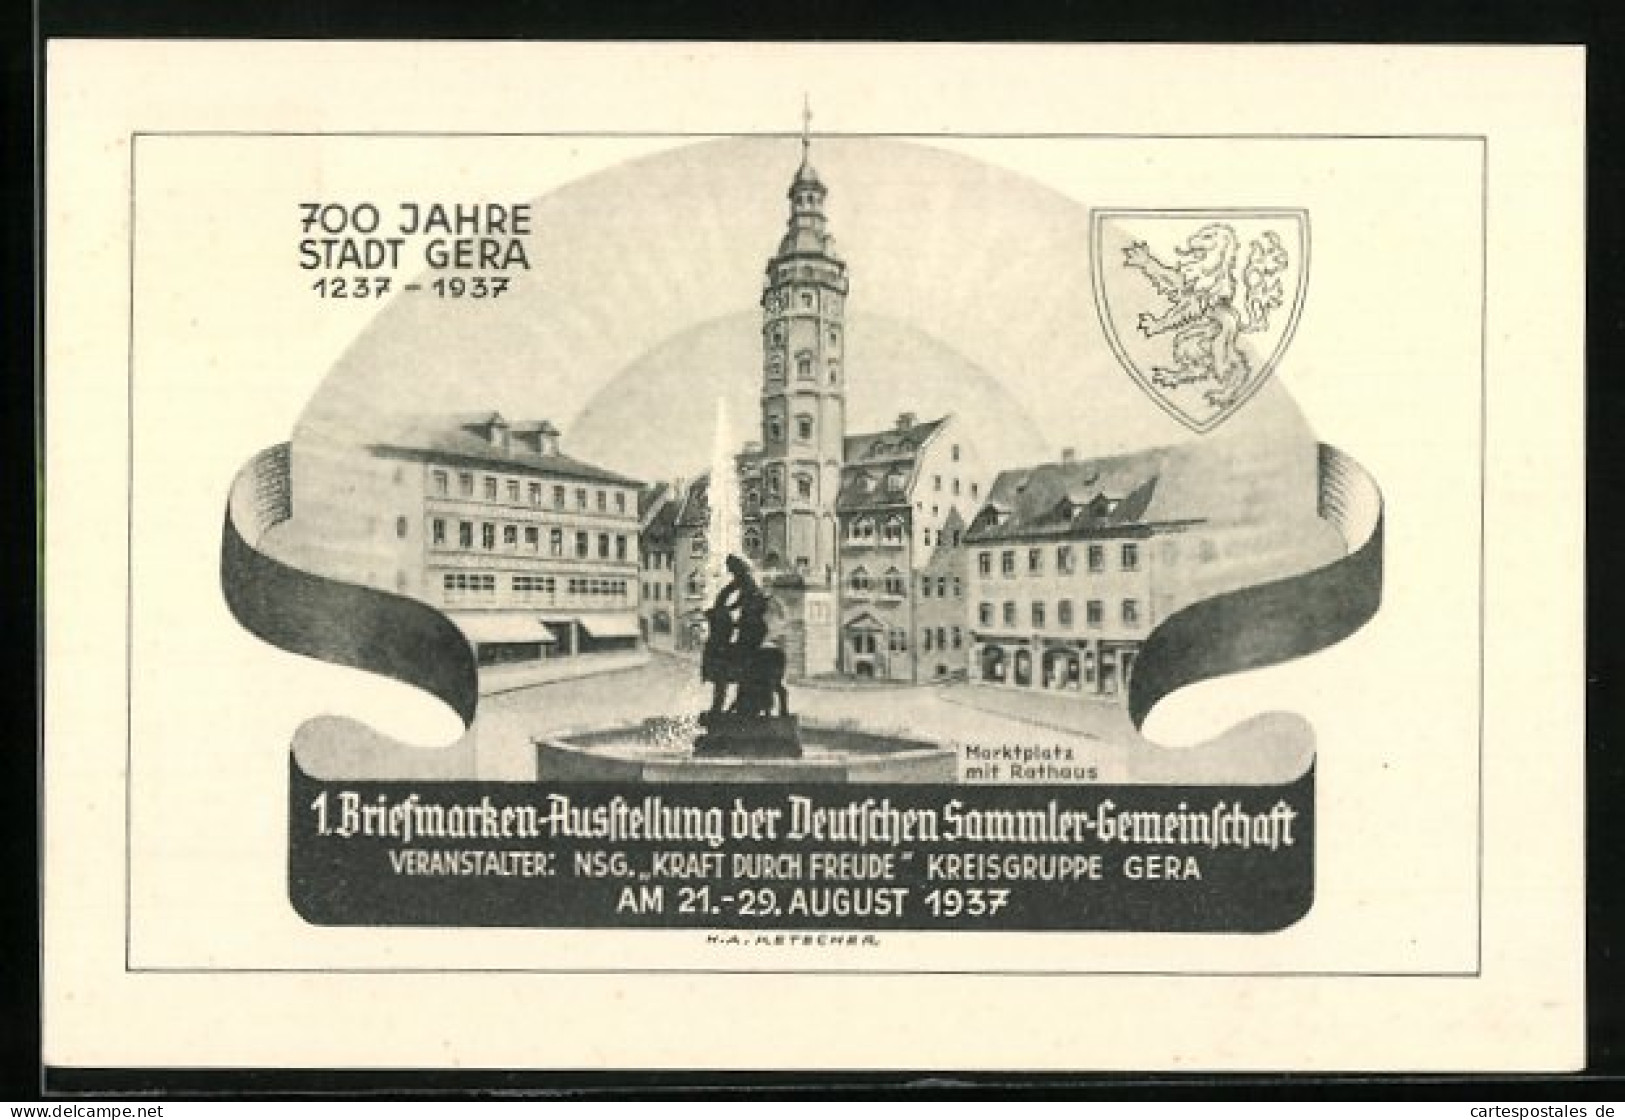 AK Gera, 1. Briefmarken-Ausstellung Der Deutschen Sammler-Gemeinschaft 1937, Marktplatz Mit Rathaus, Ganzsache  - Briefmarken (Abbildungen)